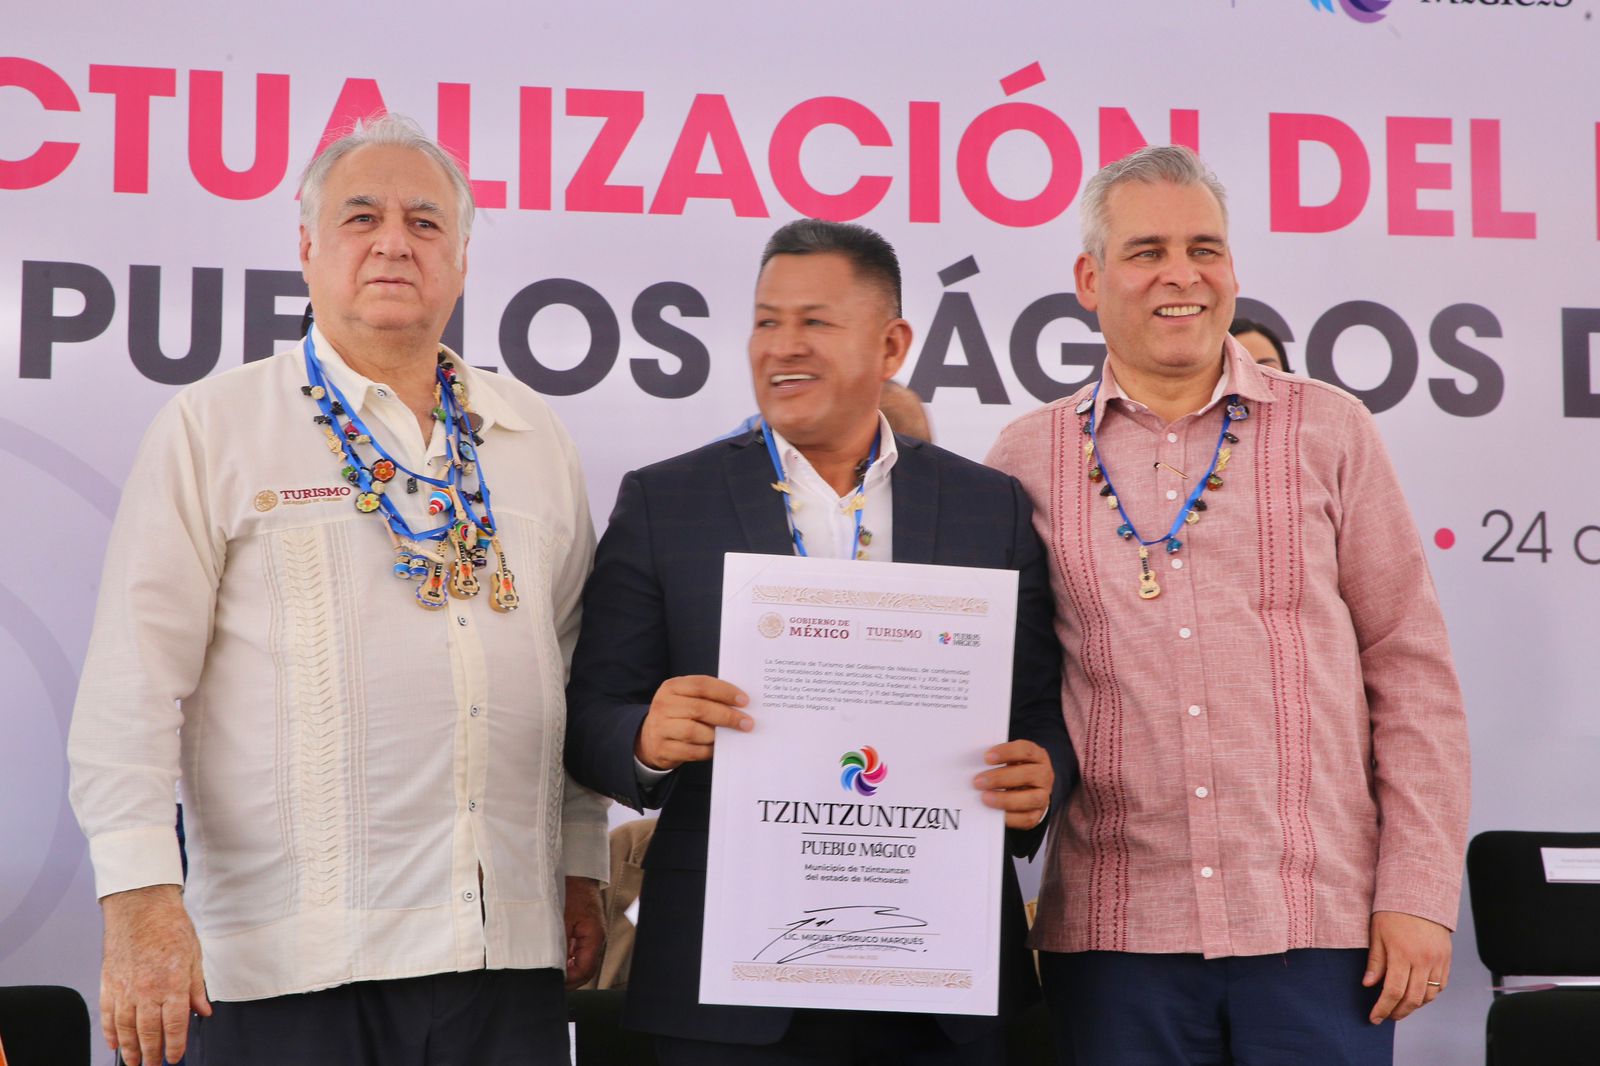 Bedolla y Torruco actualizan nombramiento a los 9 Pueblos Mágicos de Michoacán